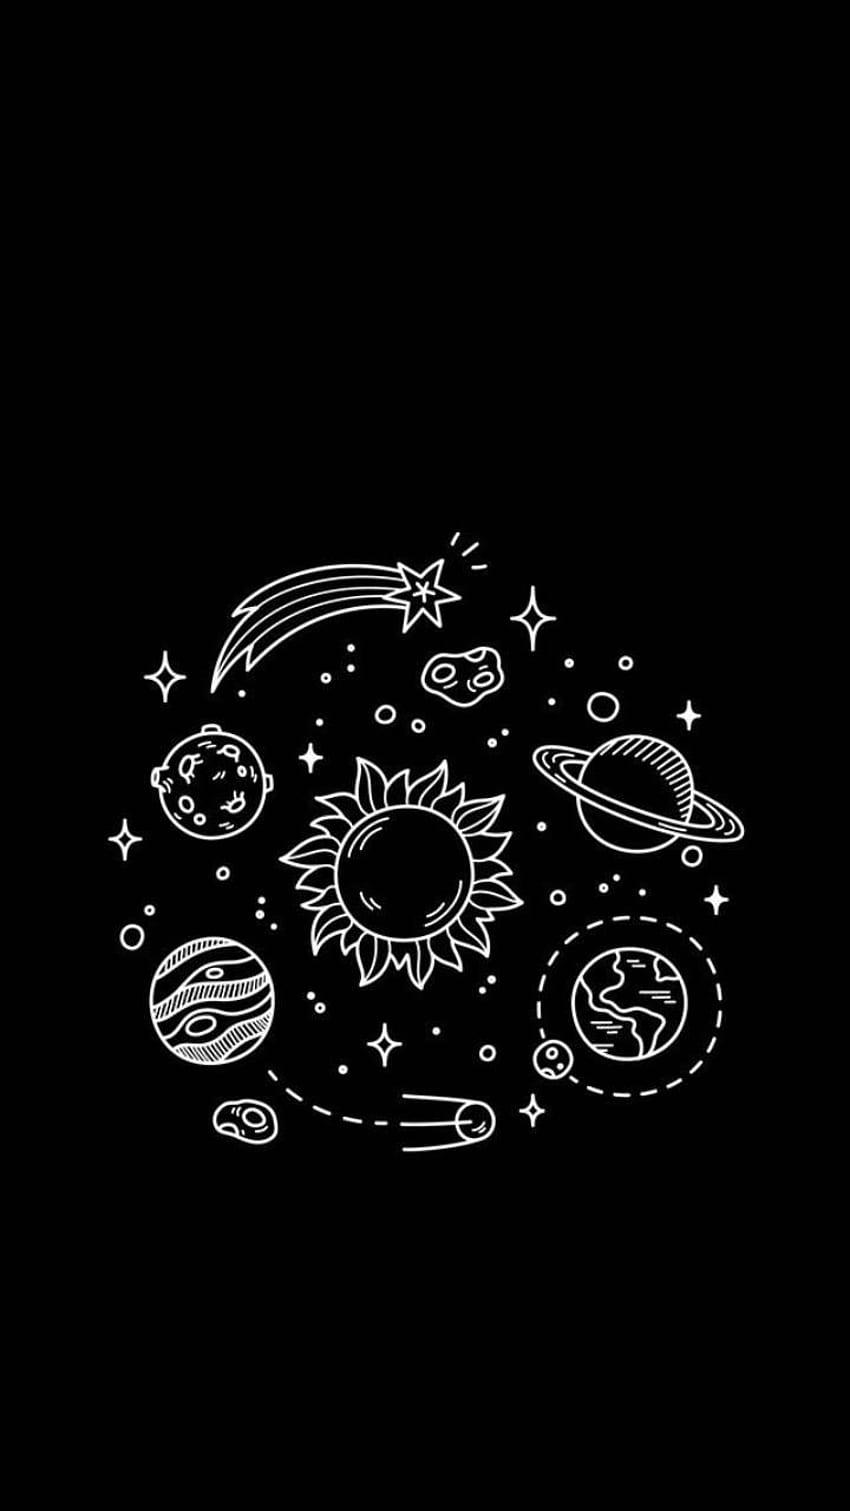 Solar System Wallpaper 17  1440x900